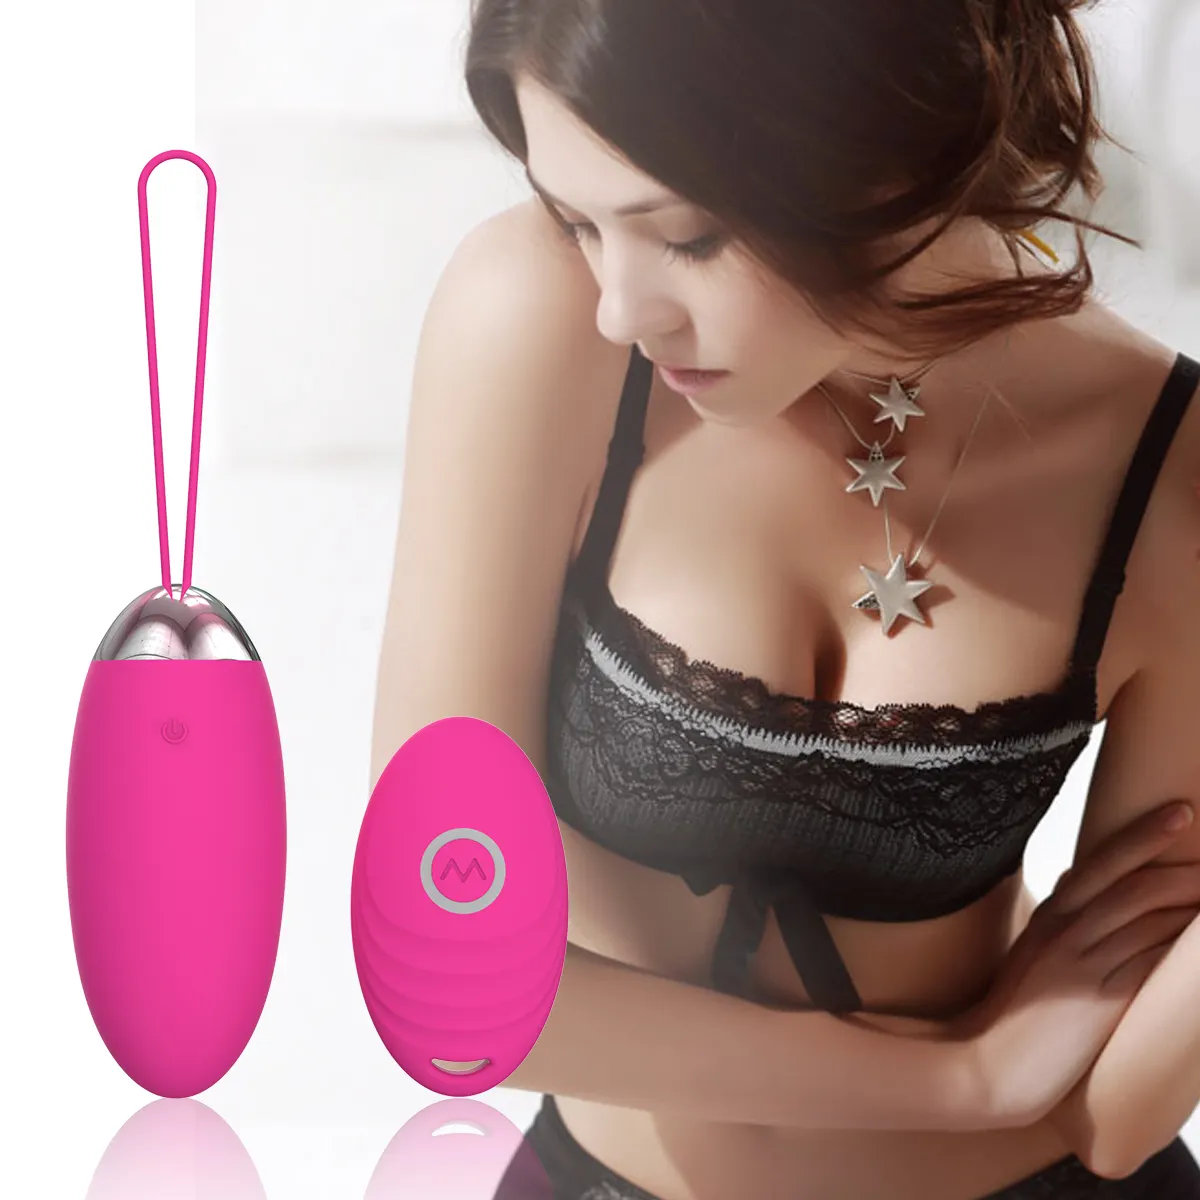 Sexspielzeug für Frau kleines Dildo Saxophon Video Hentai Silikon xxx xxxxx xxx xxxxx Masturbation gerät zur Stimulierung des drahtlosen Sexspielzeugs